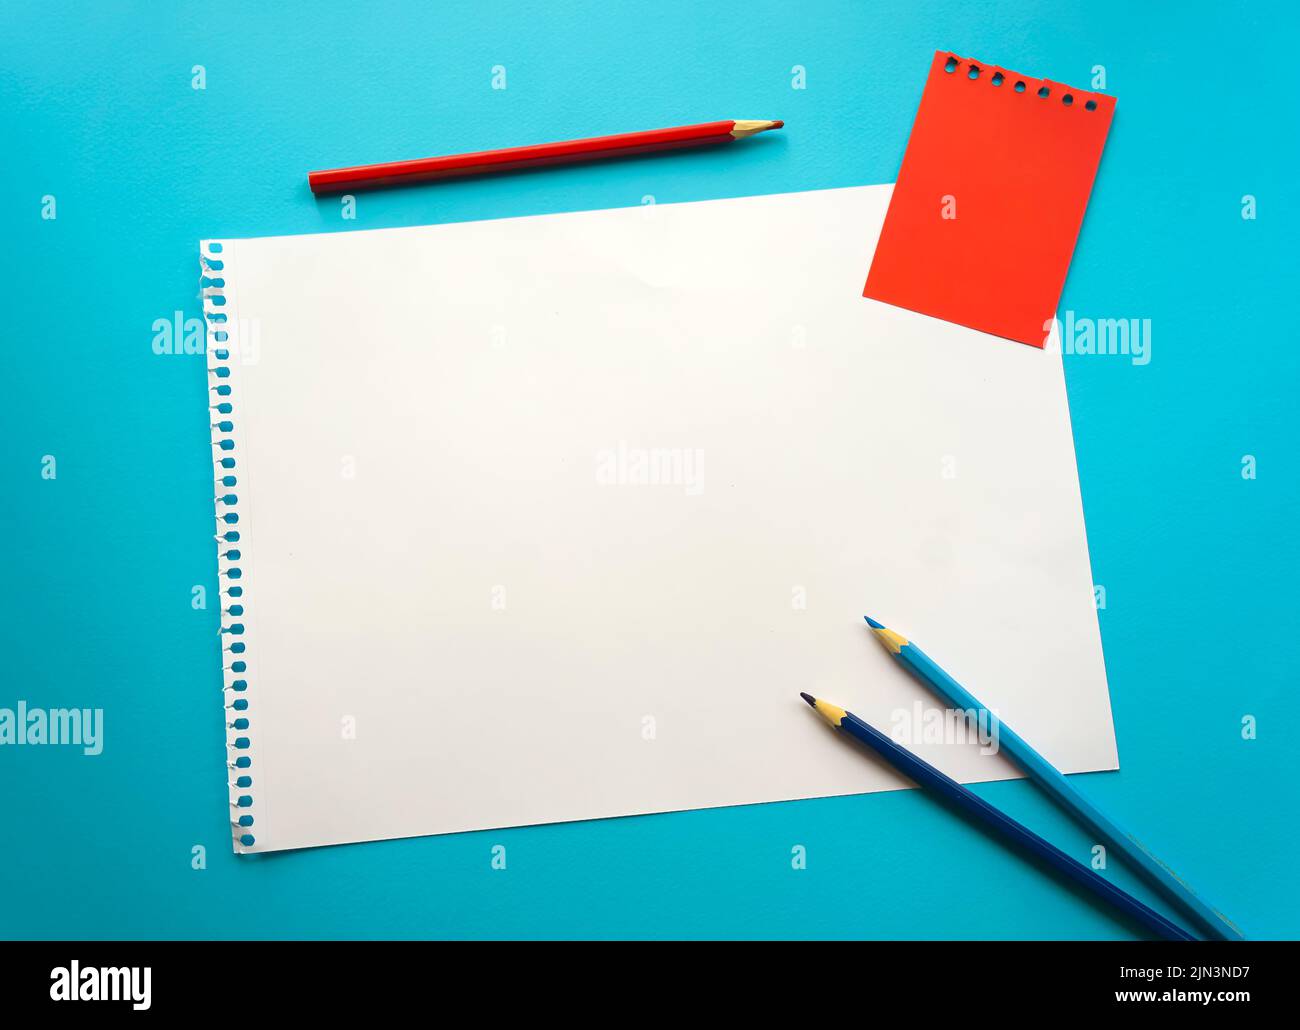 Leeres Blatt Papier Platz für Design und Beschriftung auf einem schönen  blauen Hintergrund, blaue Stifte. Ein Blatt perforiertes Papier, das aus  einer Notepad-Auflage gerissen wurde Stockfotografie - Alamy